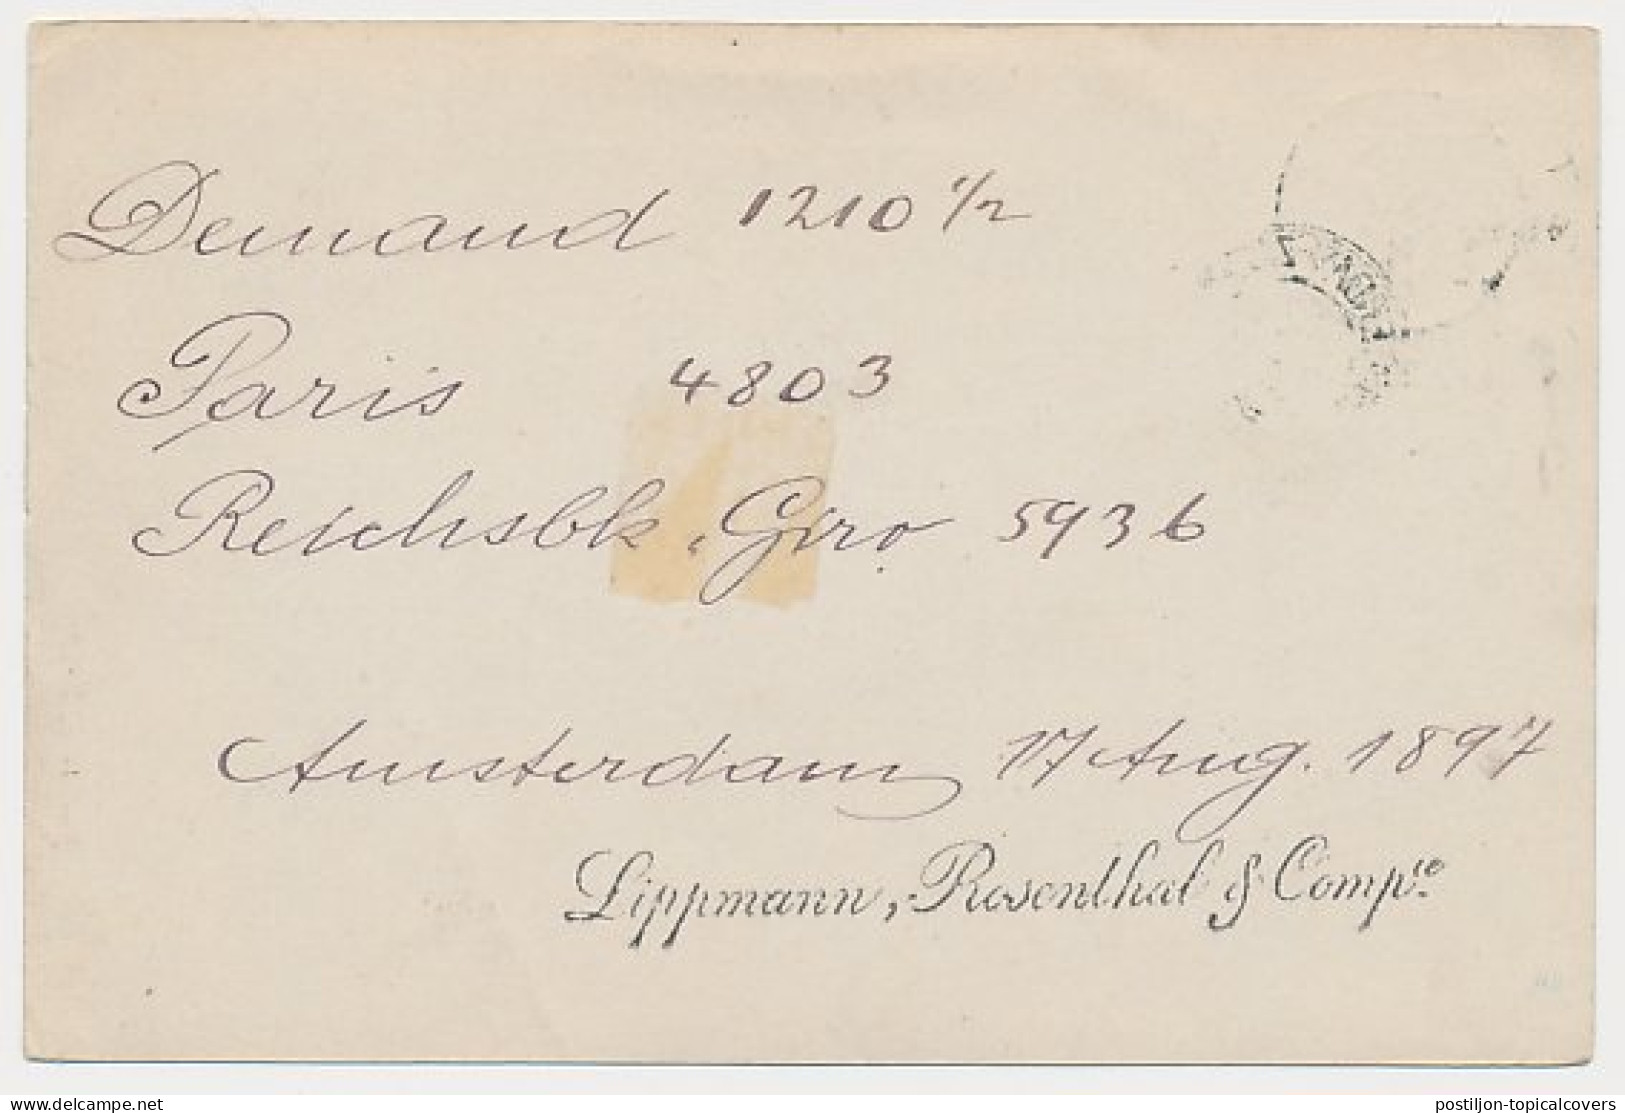 Trein Kleinrondstempel Amsterdam - Zutphen V 1897 - Briefe U. Dokumente